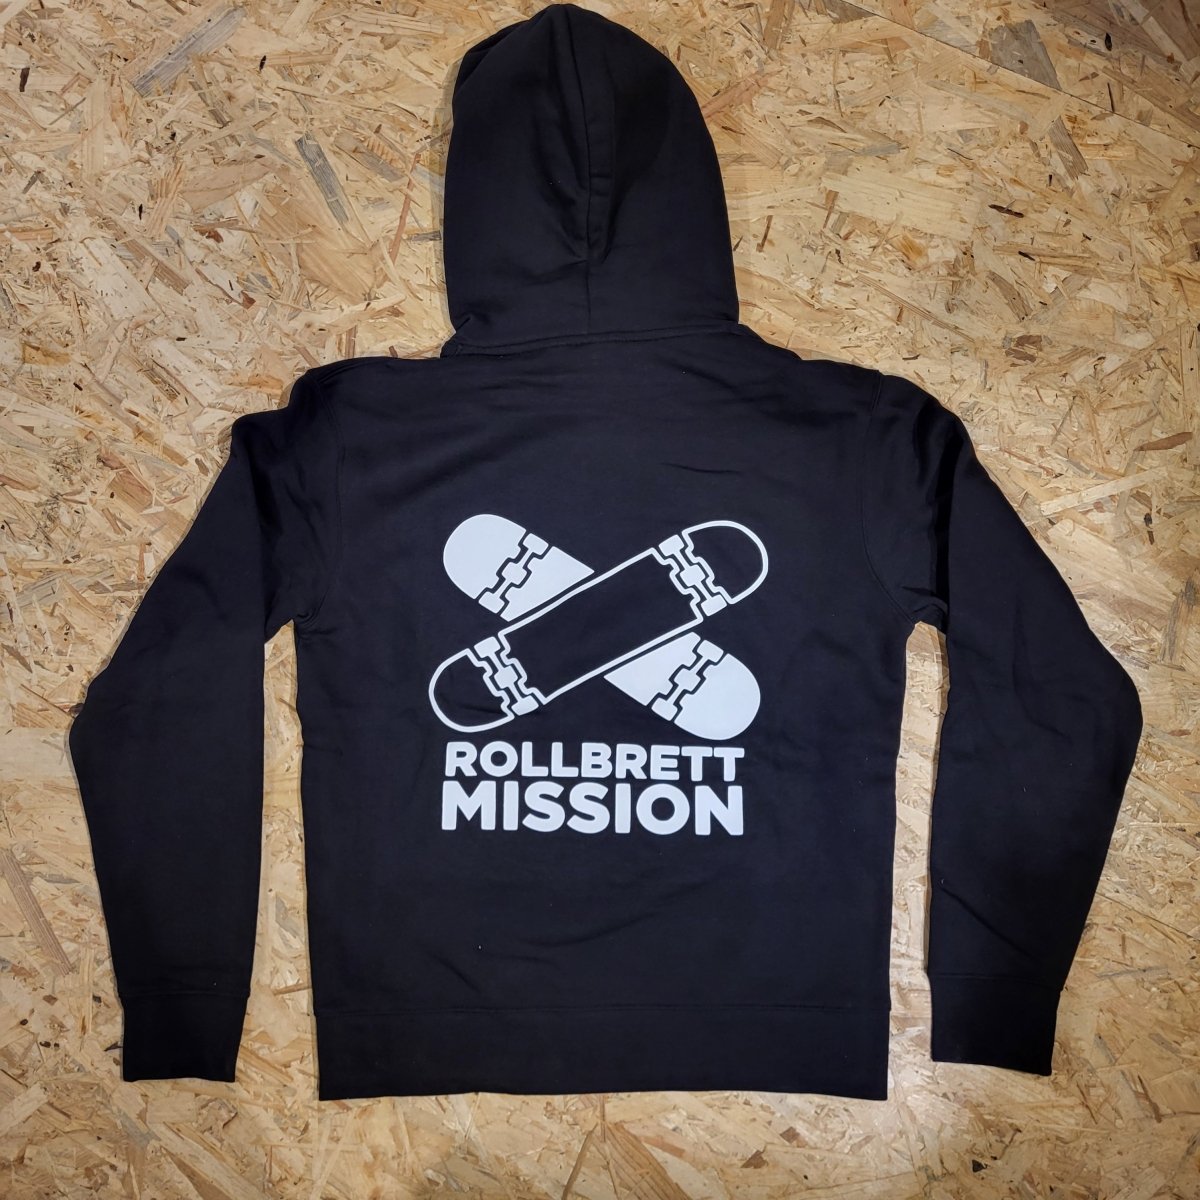 Rollbrett Mission Old School Hoodie black - Shirts & Tops - Rollbrett Mission